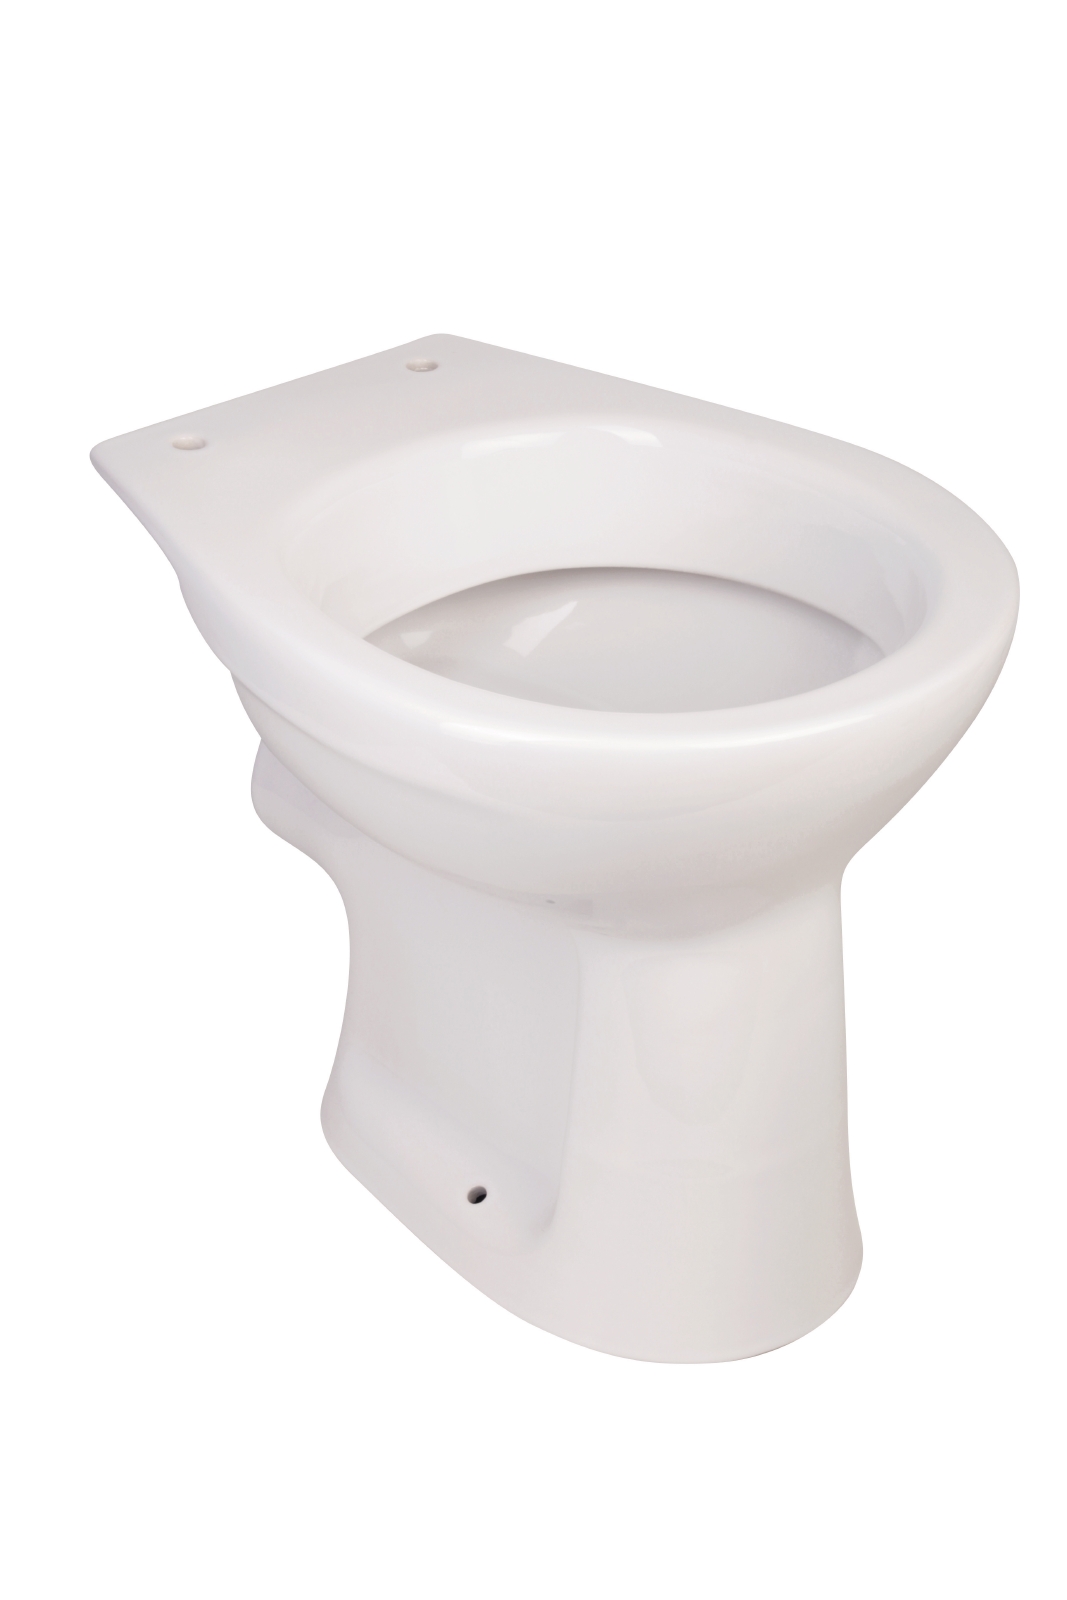 Stand-WC Universal in Weiß, Flachspüler, Abgang waagerecht